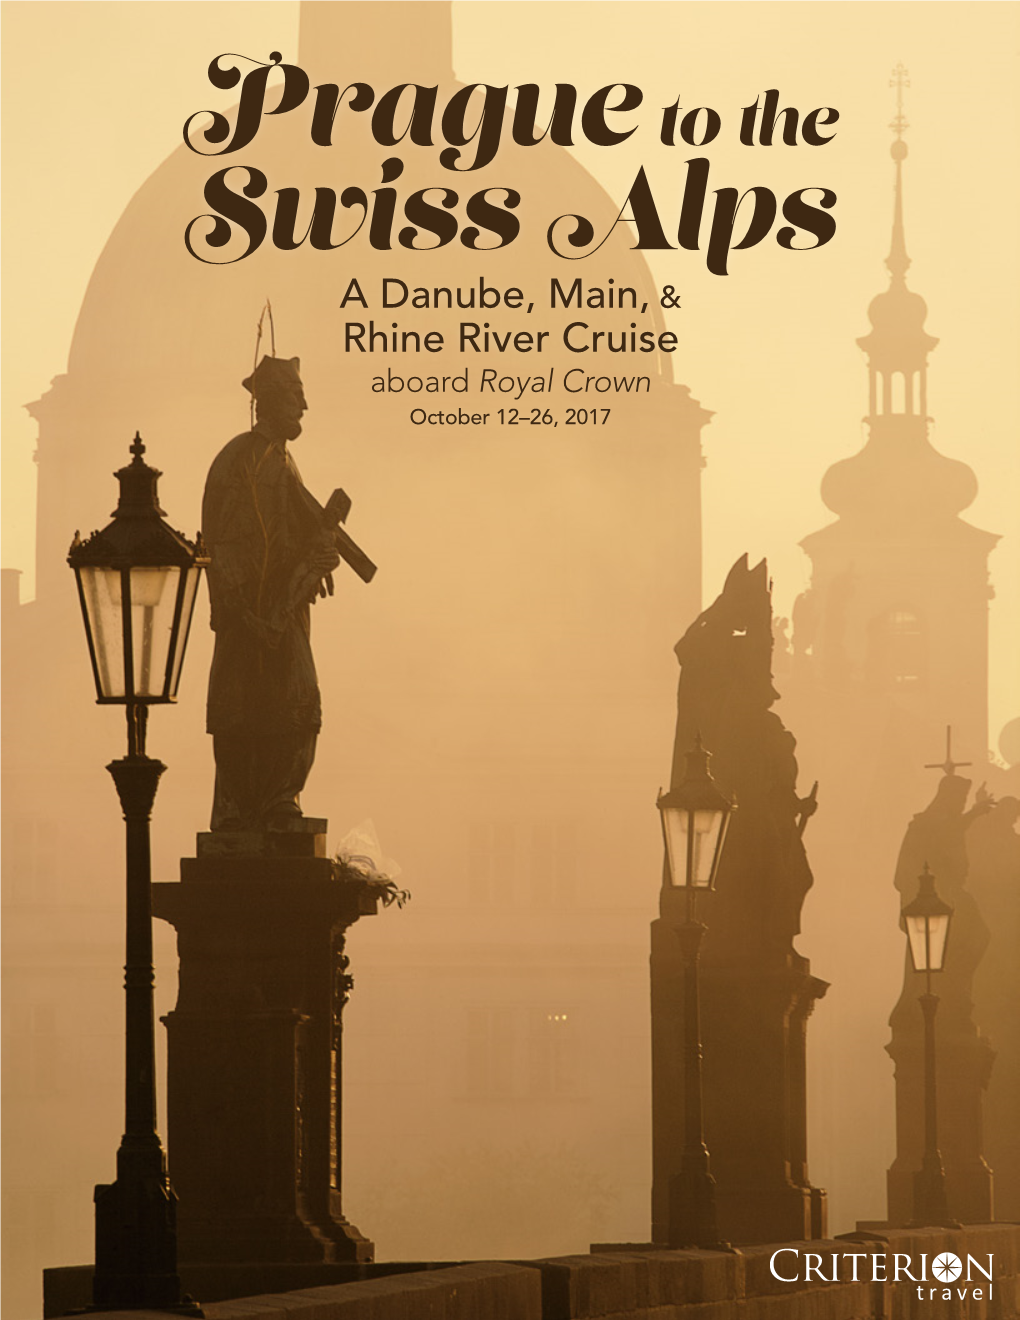 A Danube, Main, & Rhine River Cruise